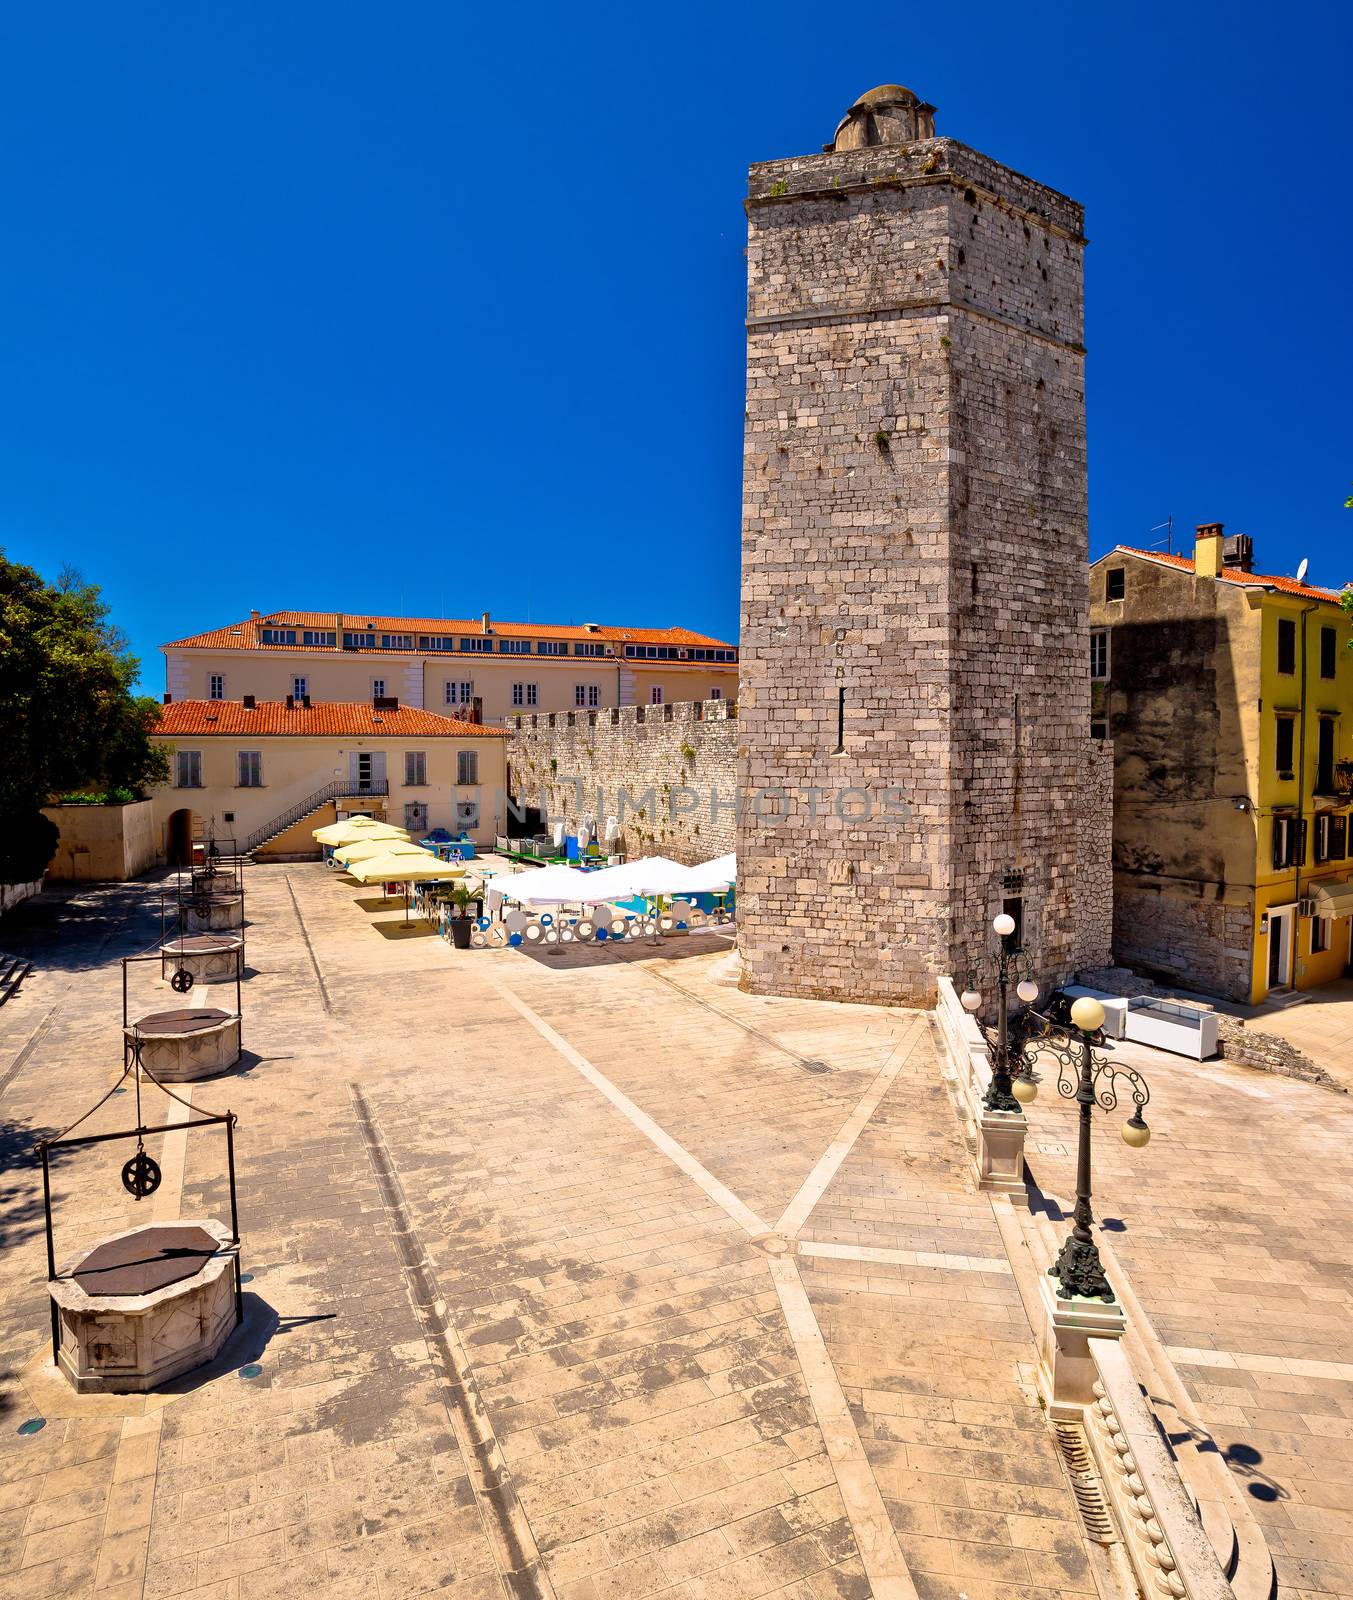 Zadar Five wells square and historic architecture view, Dalmatia, Croatia